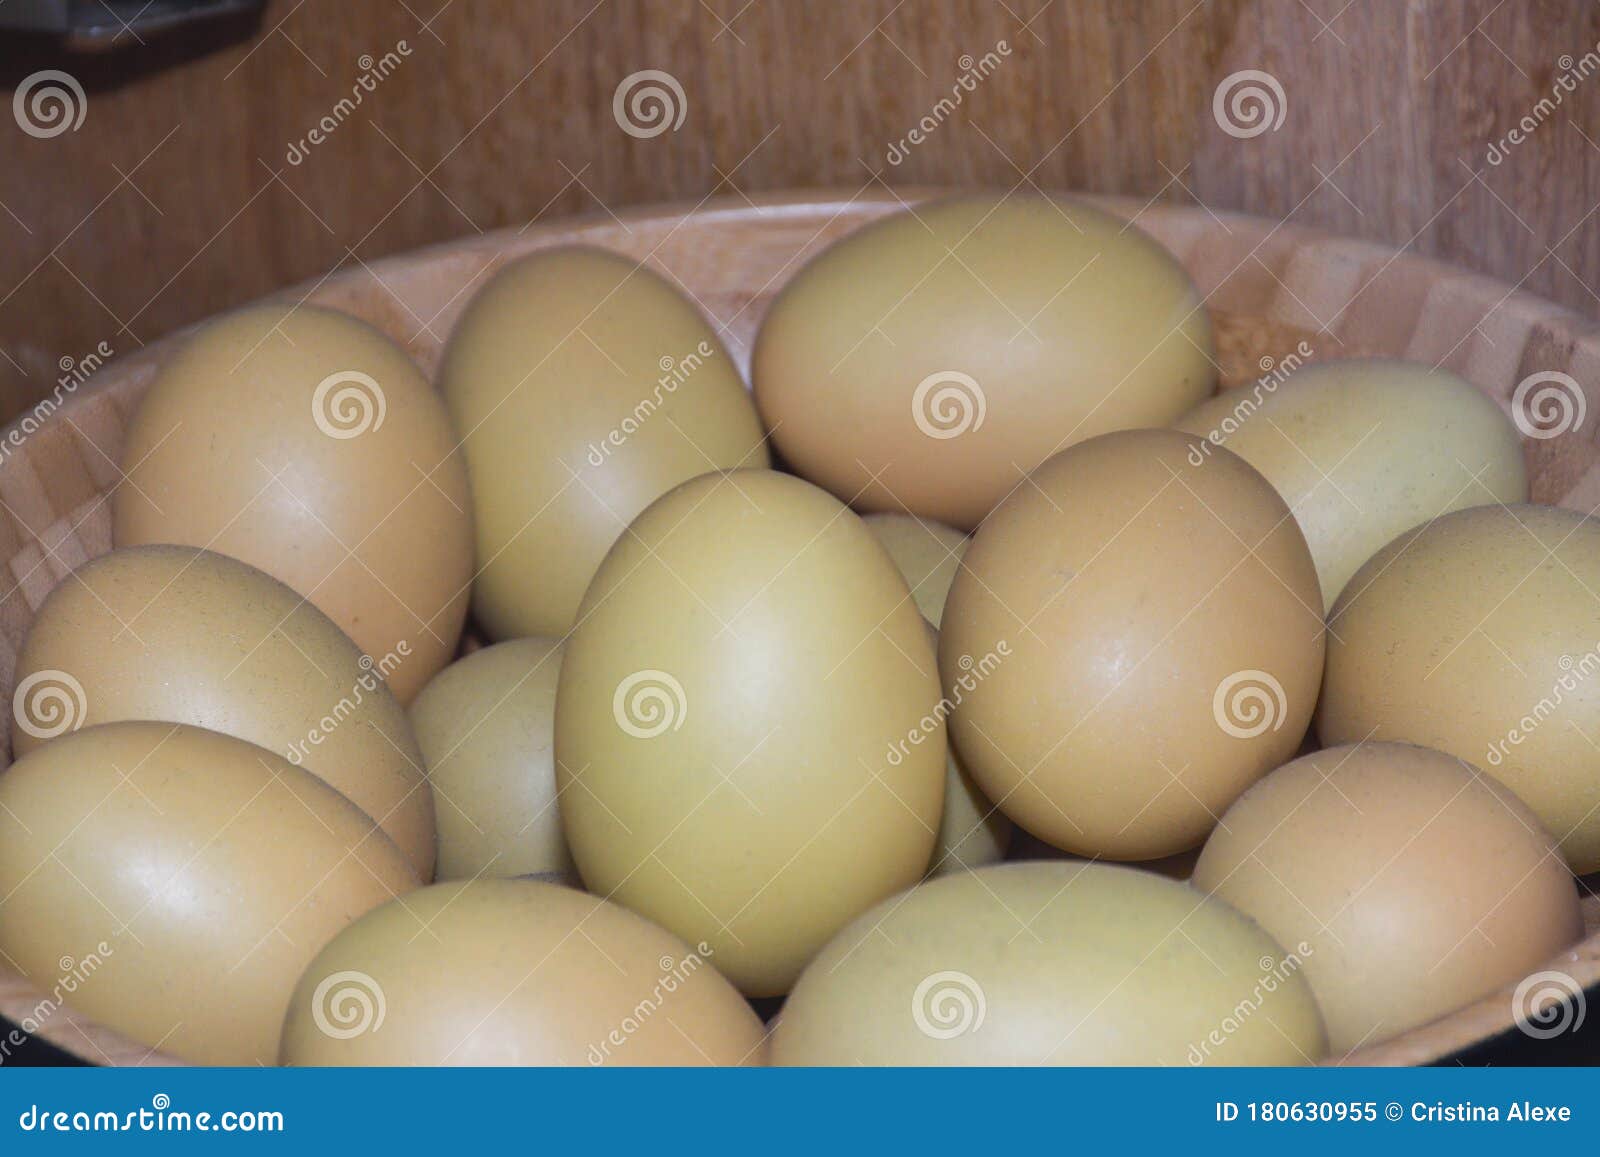 Egg balut How To